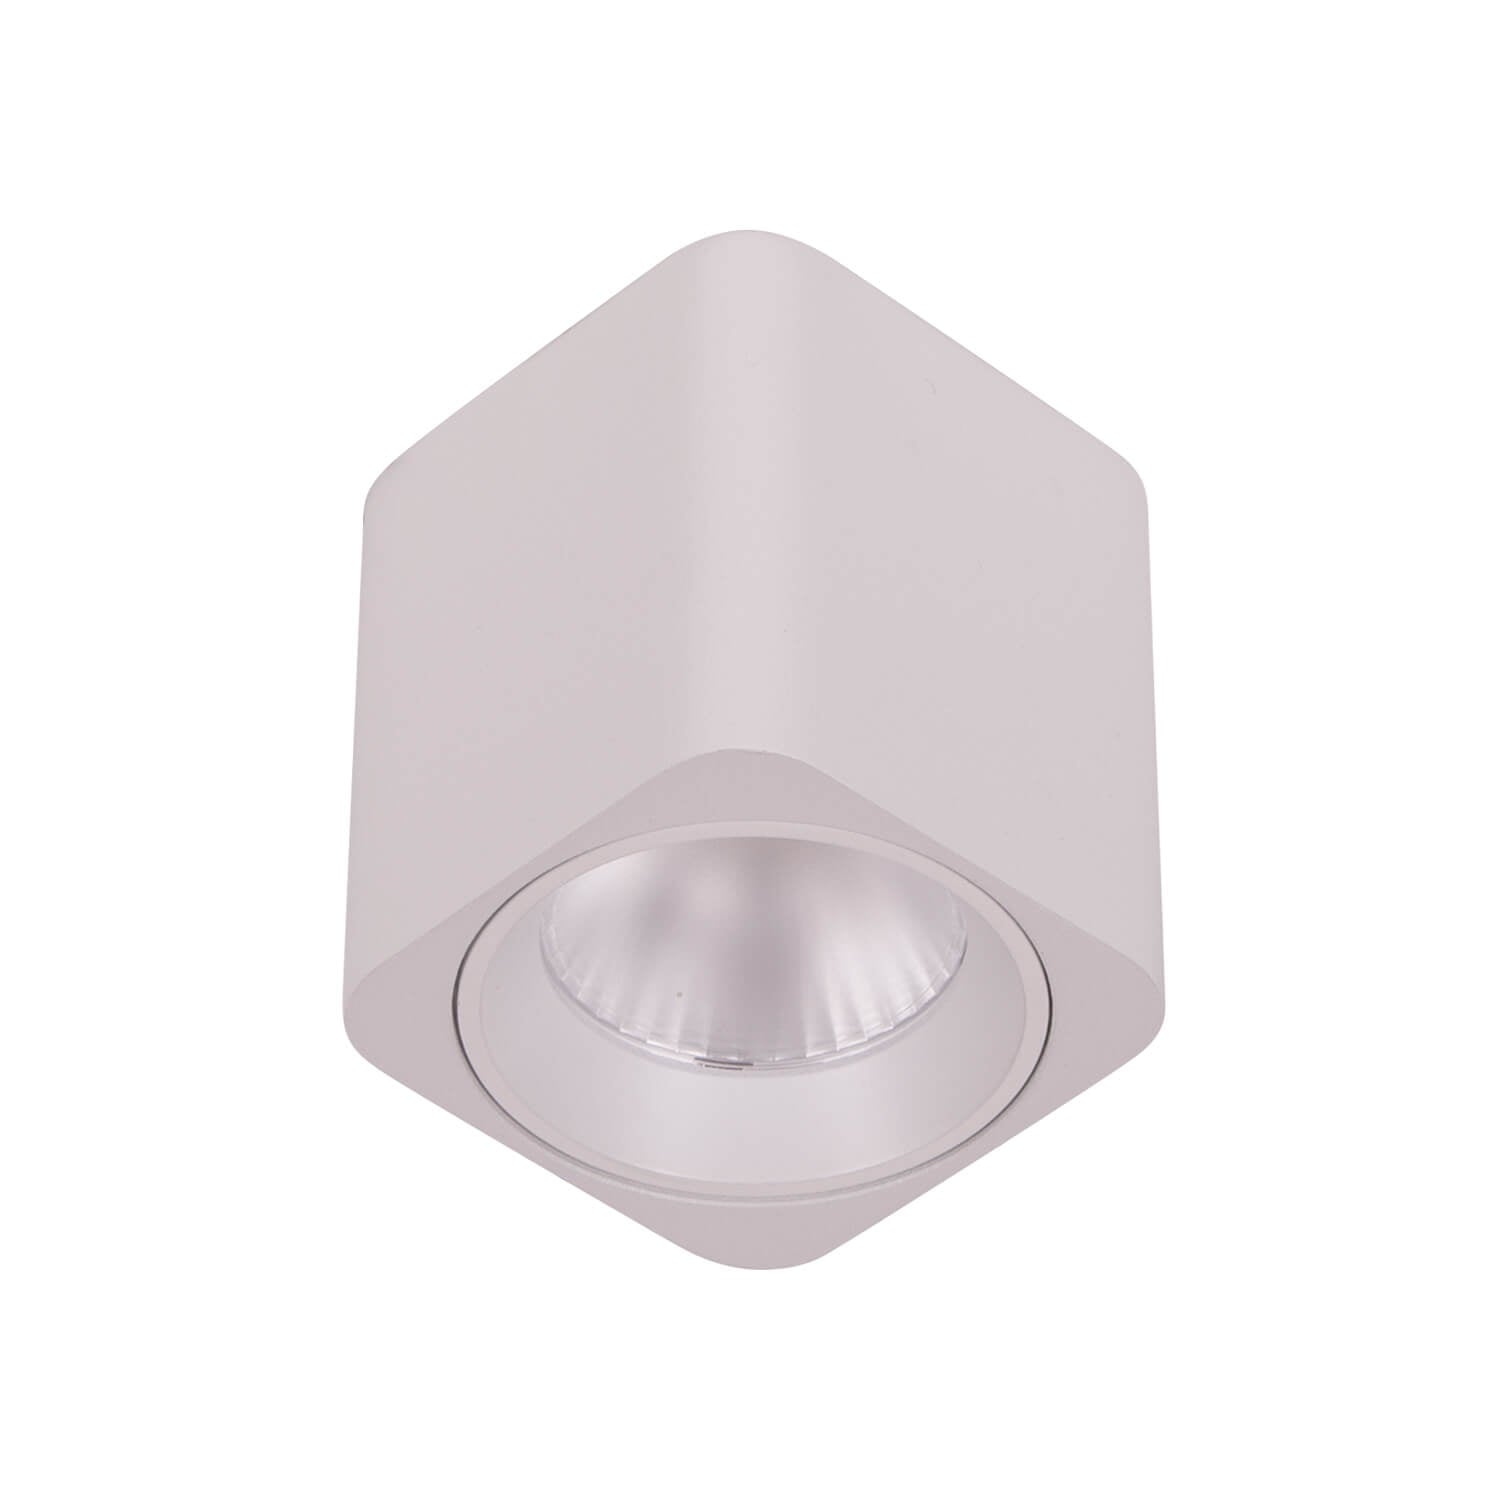 Spot aplicat SPOT C2 alb, design modern, spoturi de tavan LED 7W 3000K. Corpuri de iluminat pentru ambientul locuinței tale. Spot aplicat SPOT C2 alb, design modern